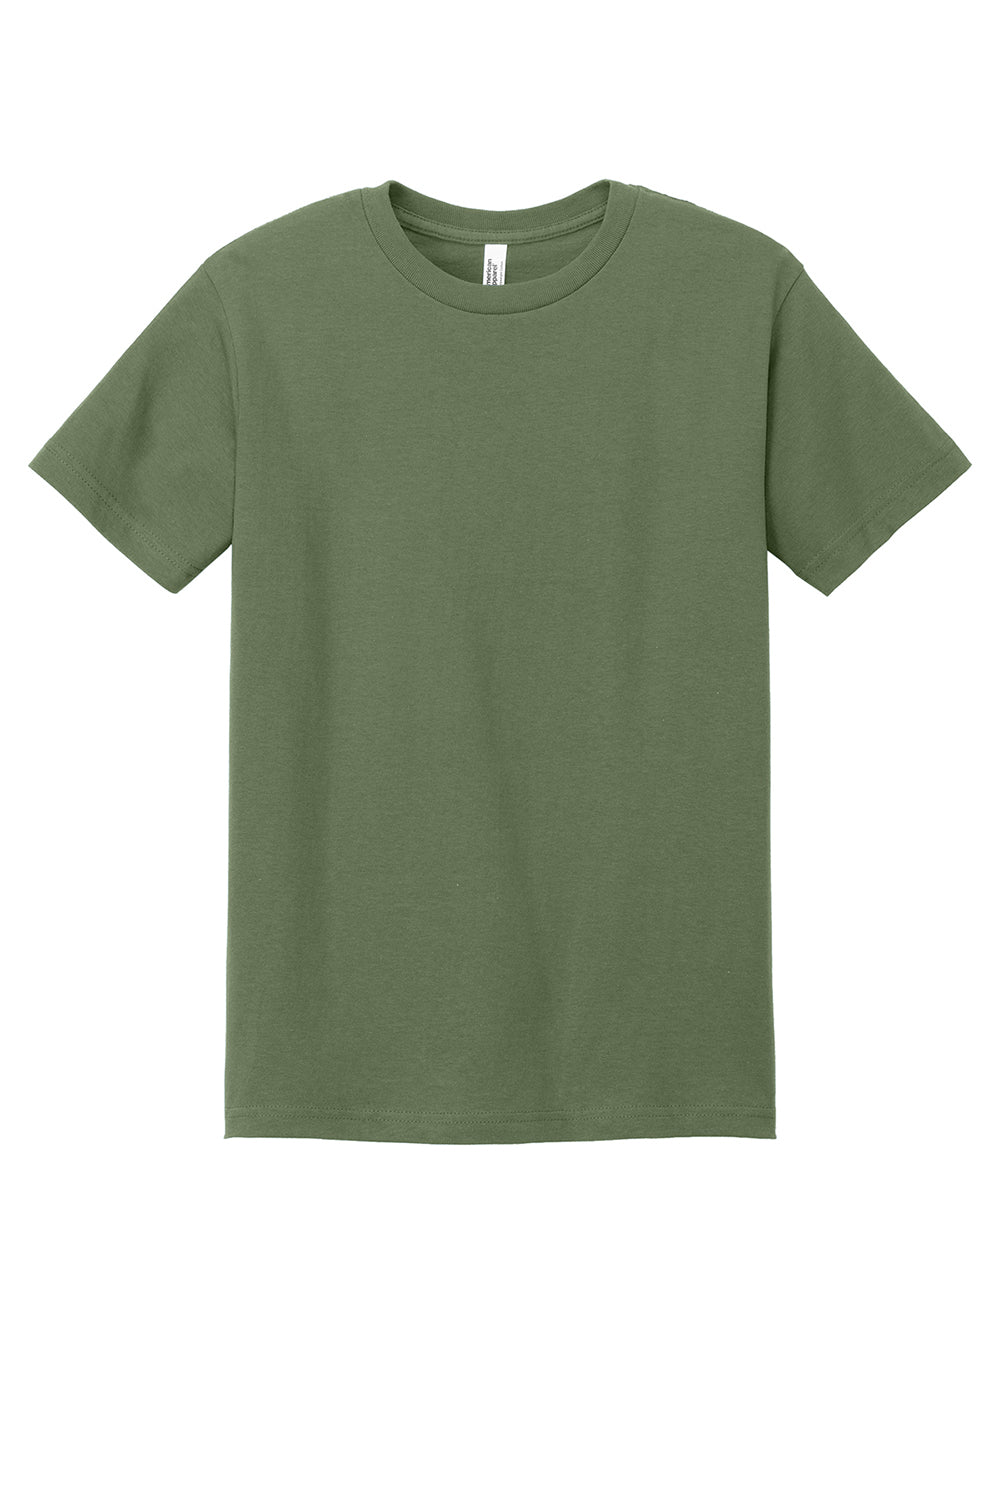 American Apparel 1301/AL1301 Mens Short Sleeve Crewneck T-Shirt Military Green Flat Front